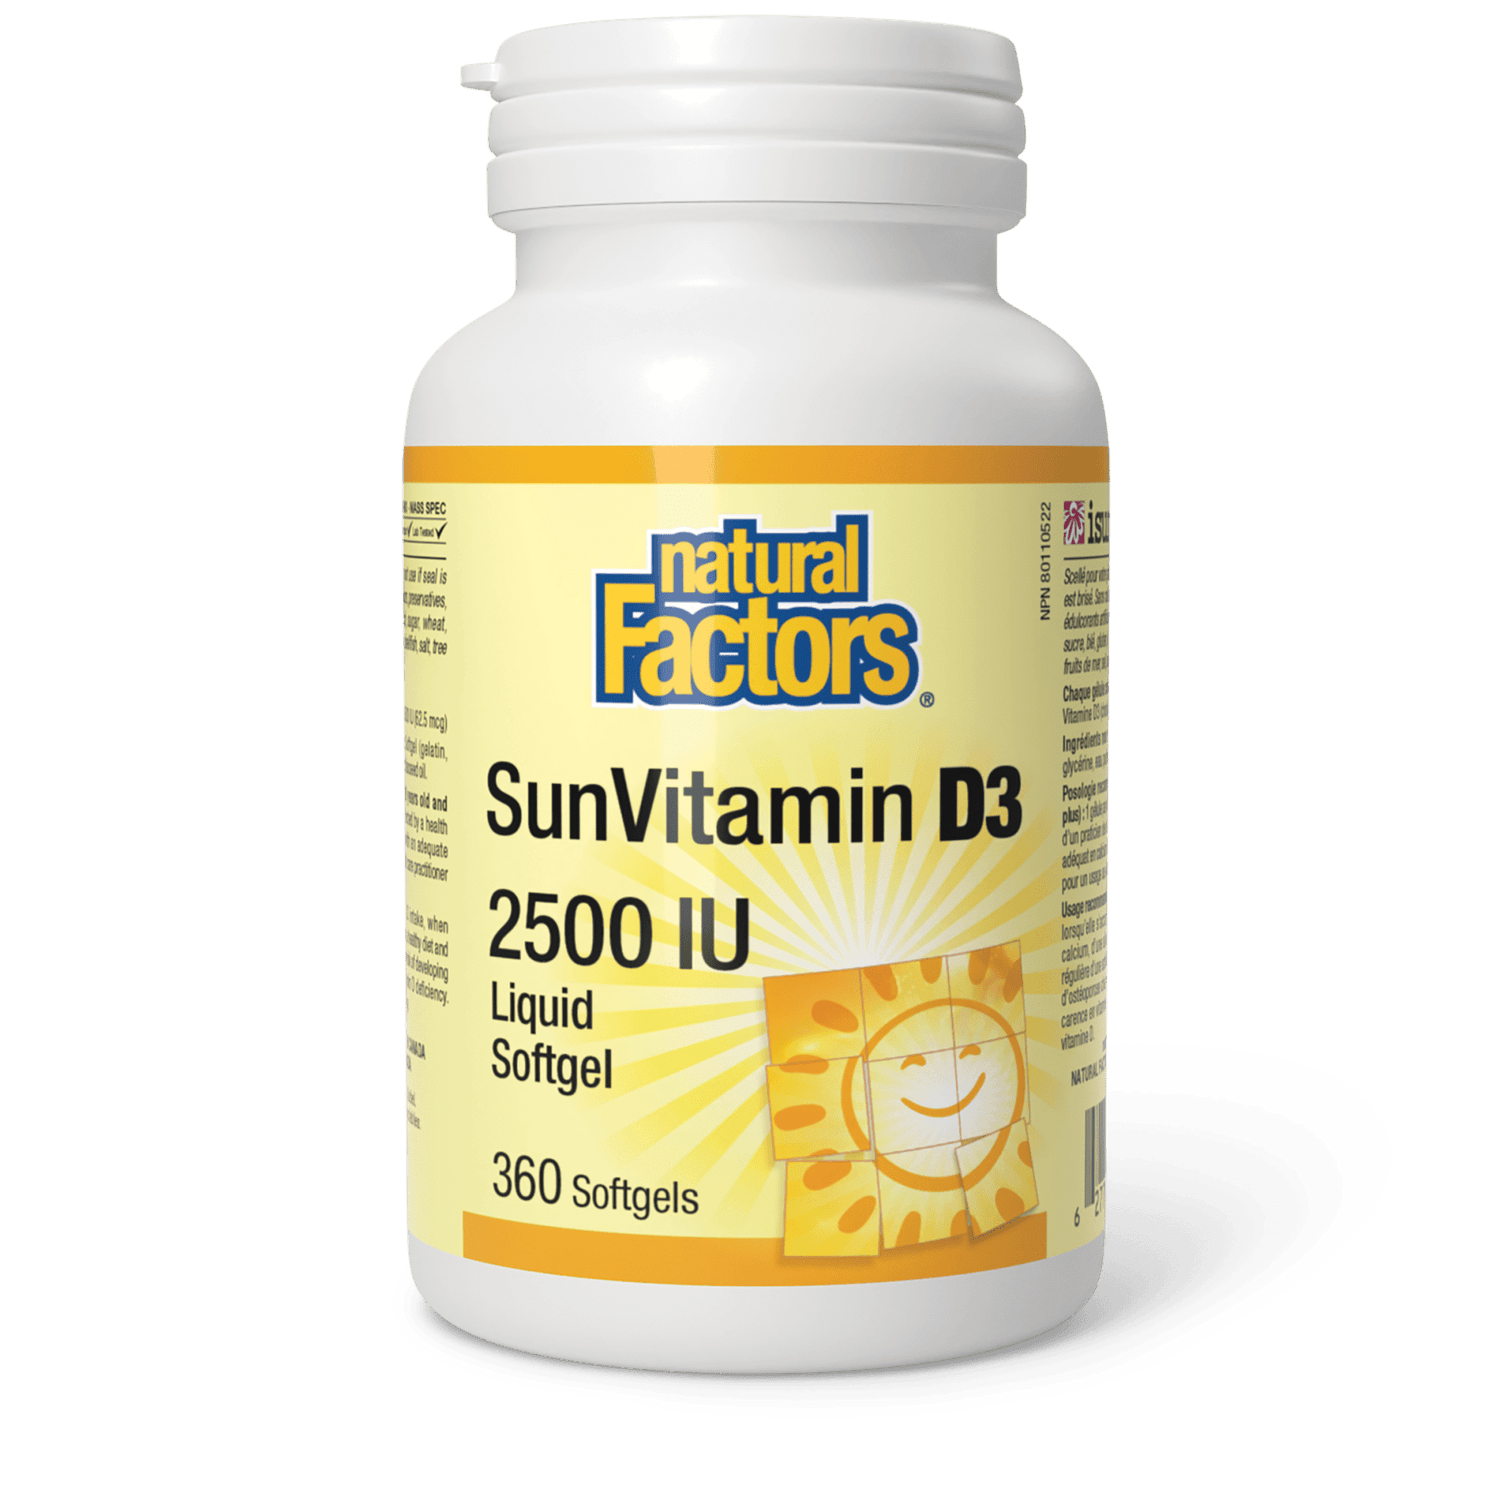 SunVitamin D3 Softgels 2500 IU, Natural Factors|v|image|1073